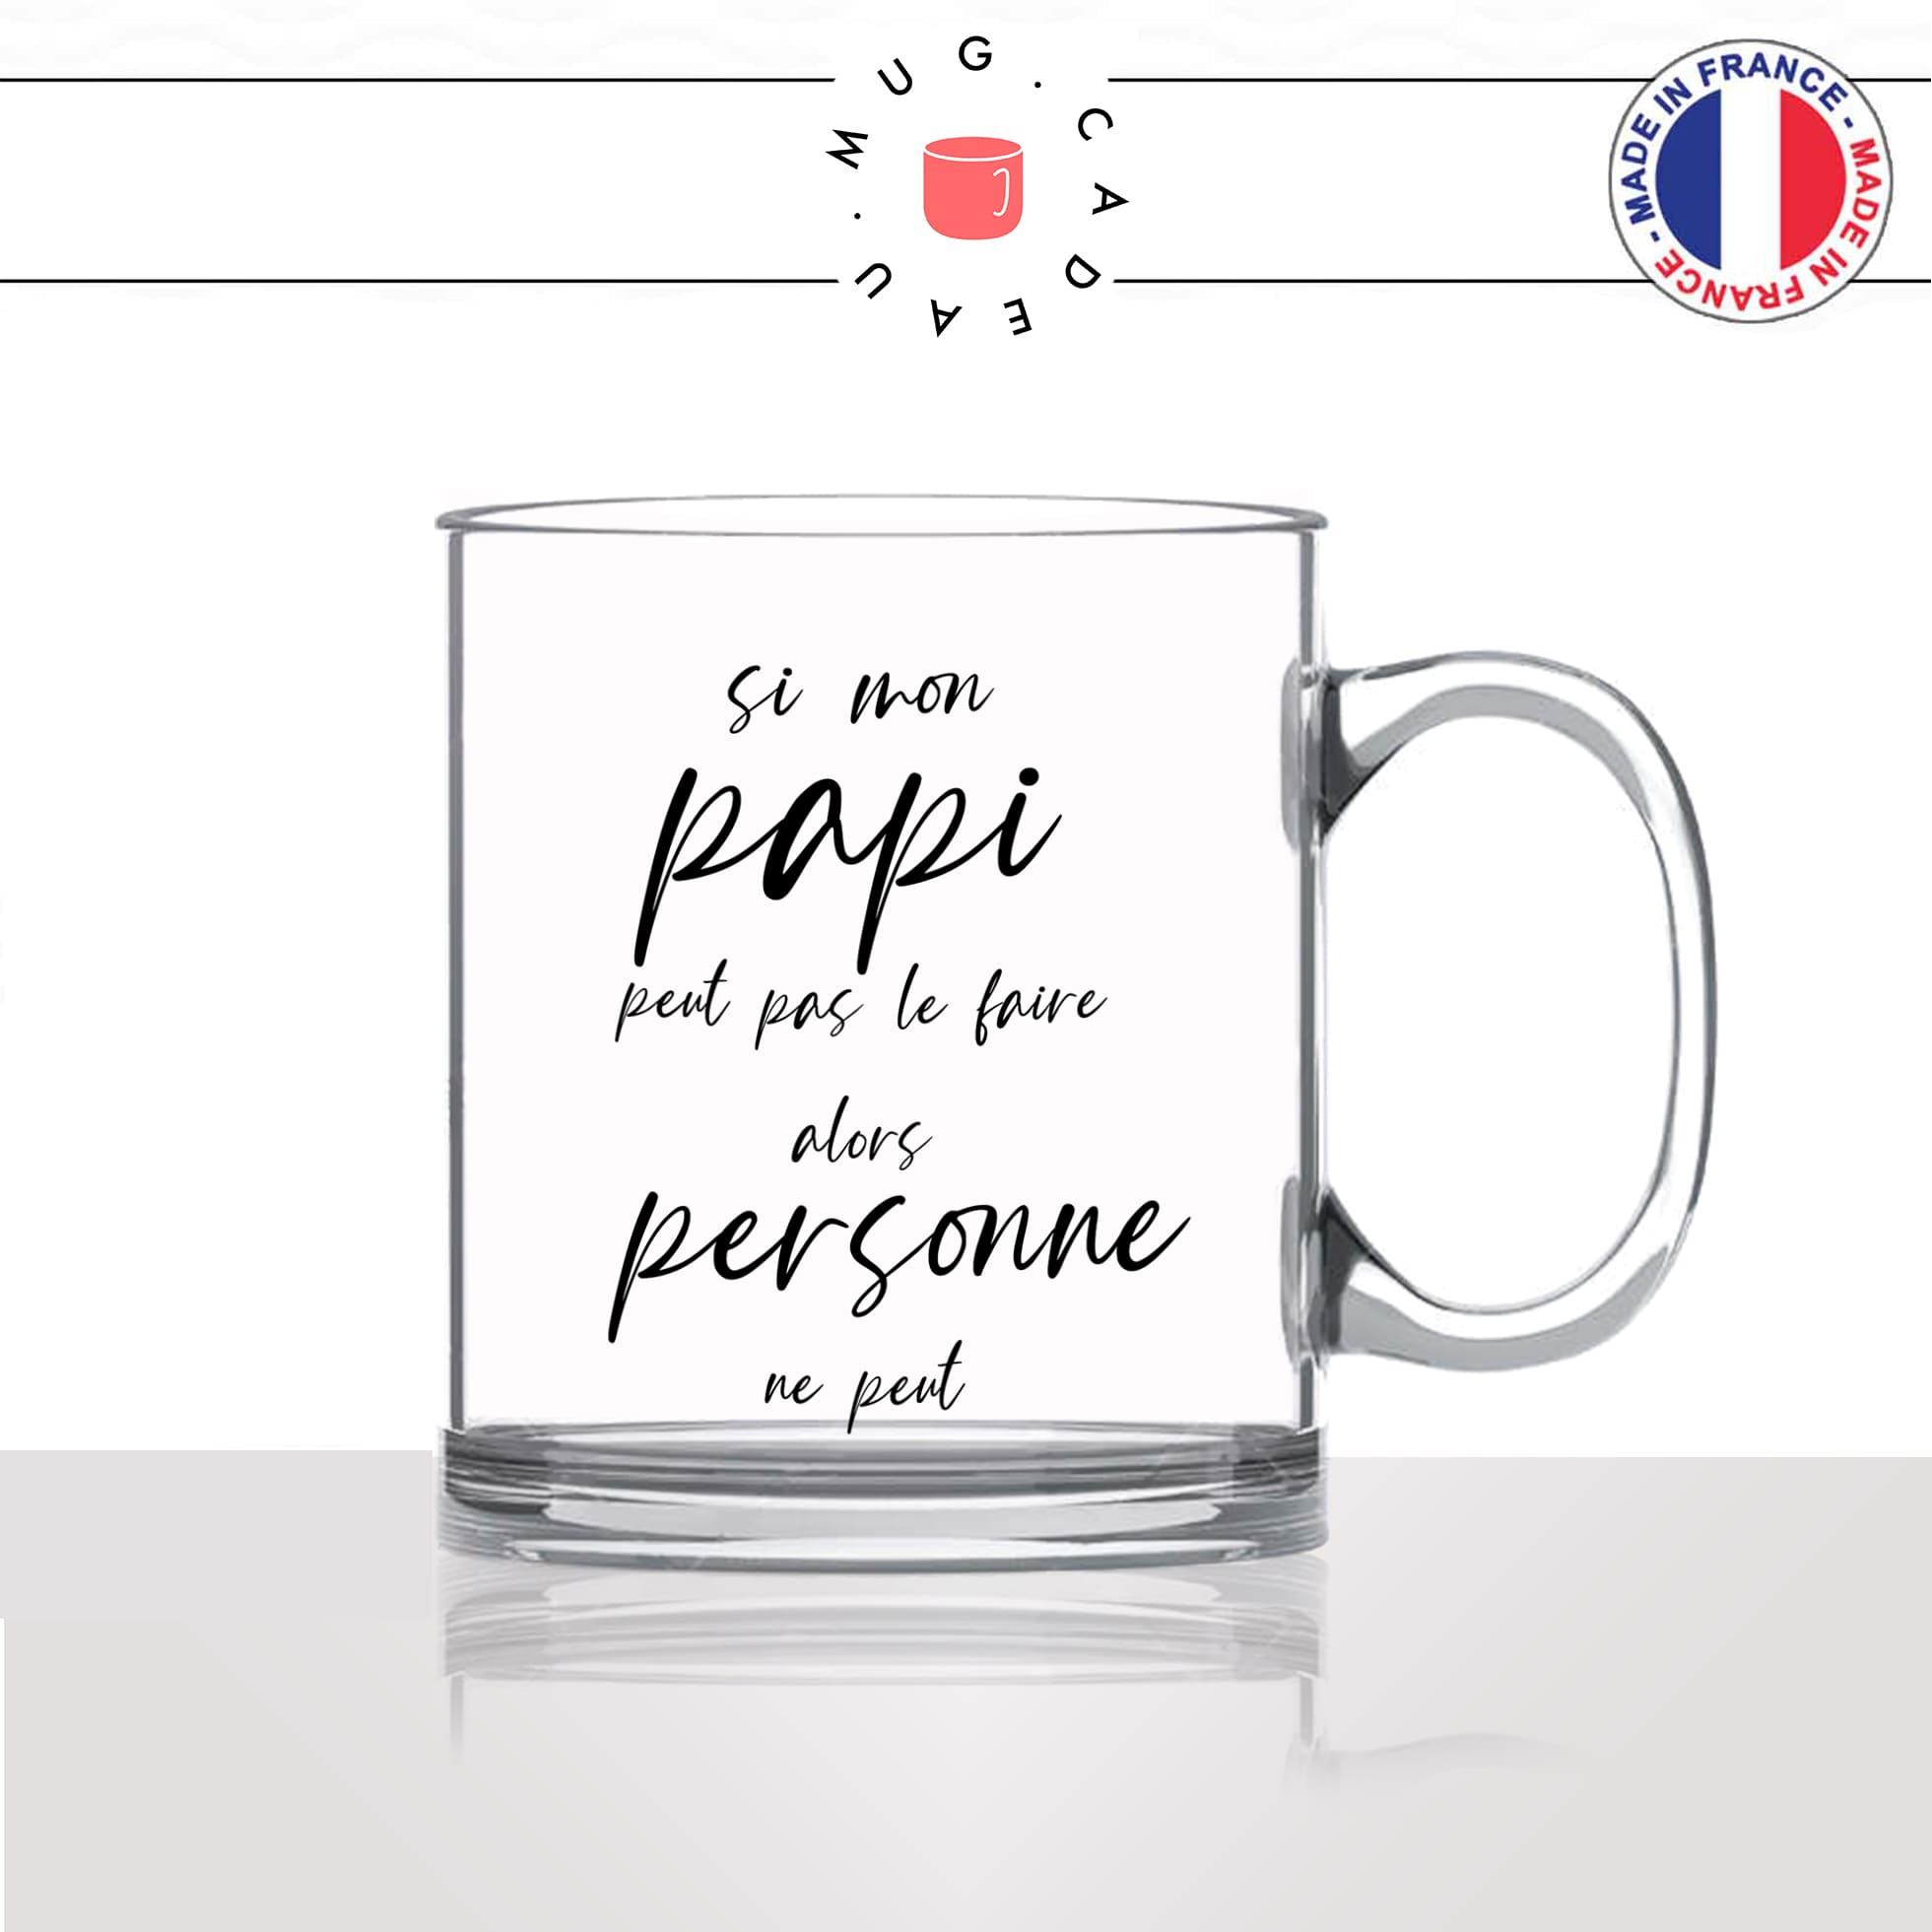 mug-tasse-en-verre-transparent-cadeau-si-mon-papi-pépé-peut-pas-le-faire-personne-peut-grand-père-homme-bricoleur-café-thé-personnalisé-personnalisable2